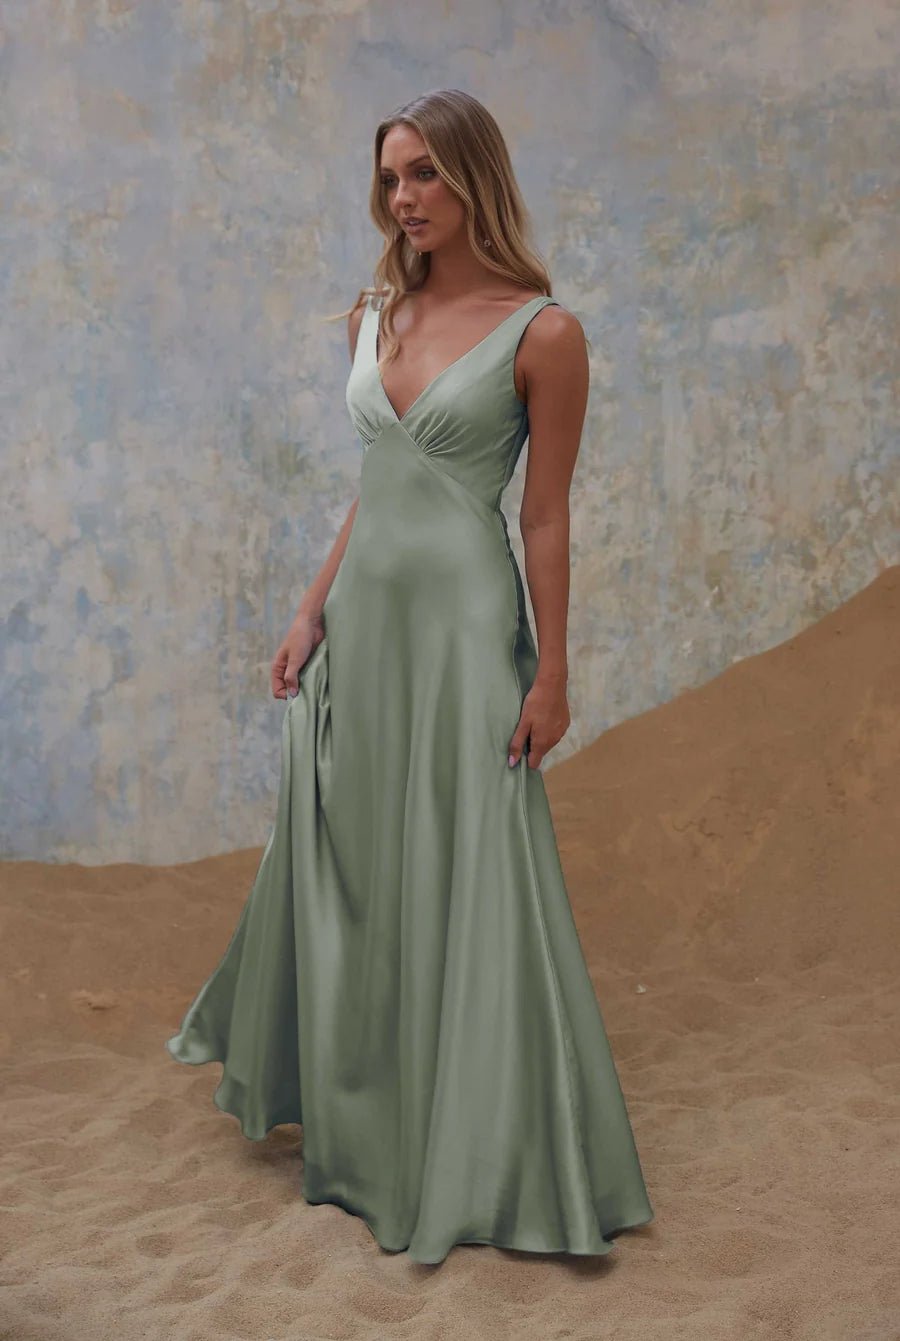 Avonlea Dress By Tania Olsen Sizes 6 - 16 TO2428 - ElissaJay Boutique